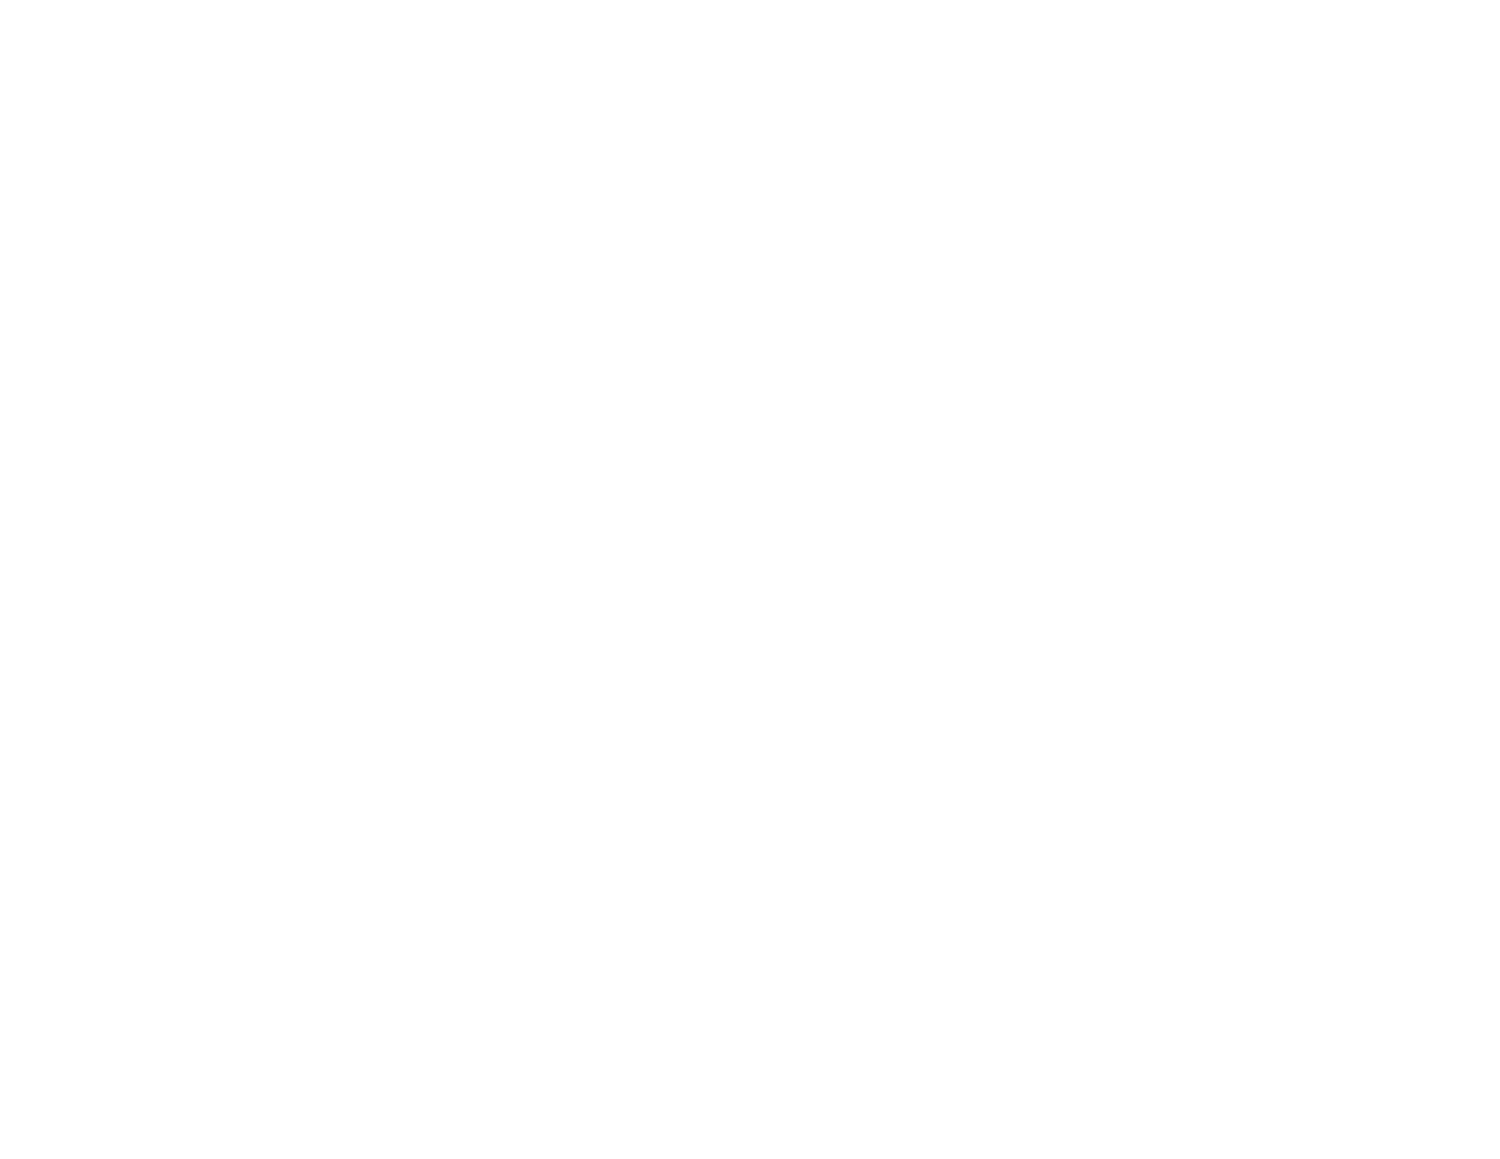 Downtown Ponchatoula Revitalization Program